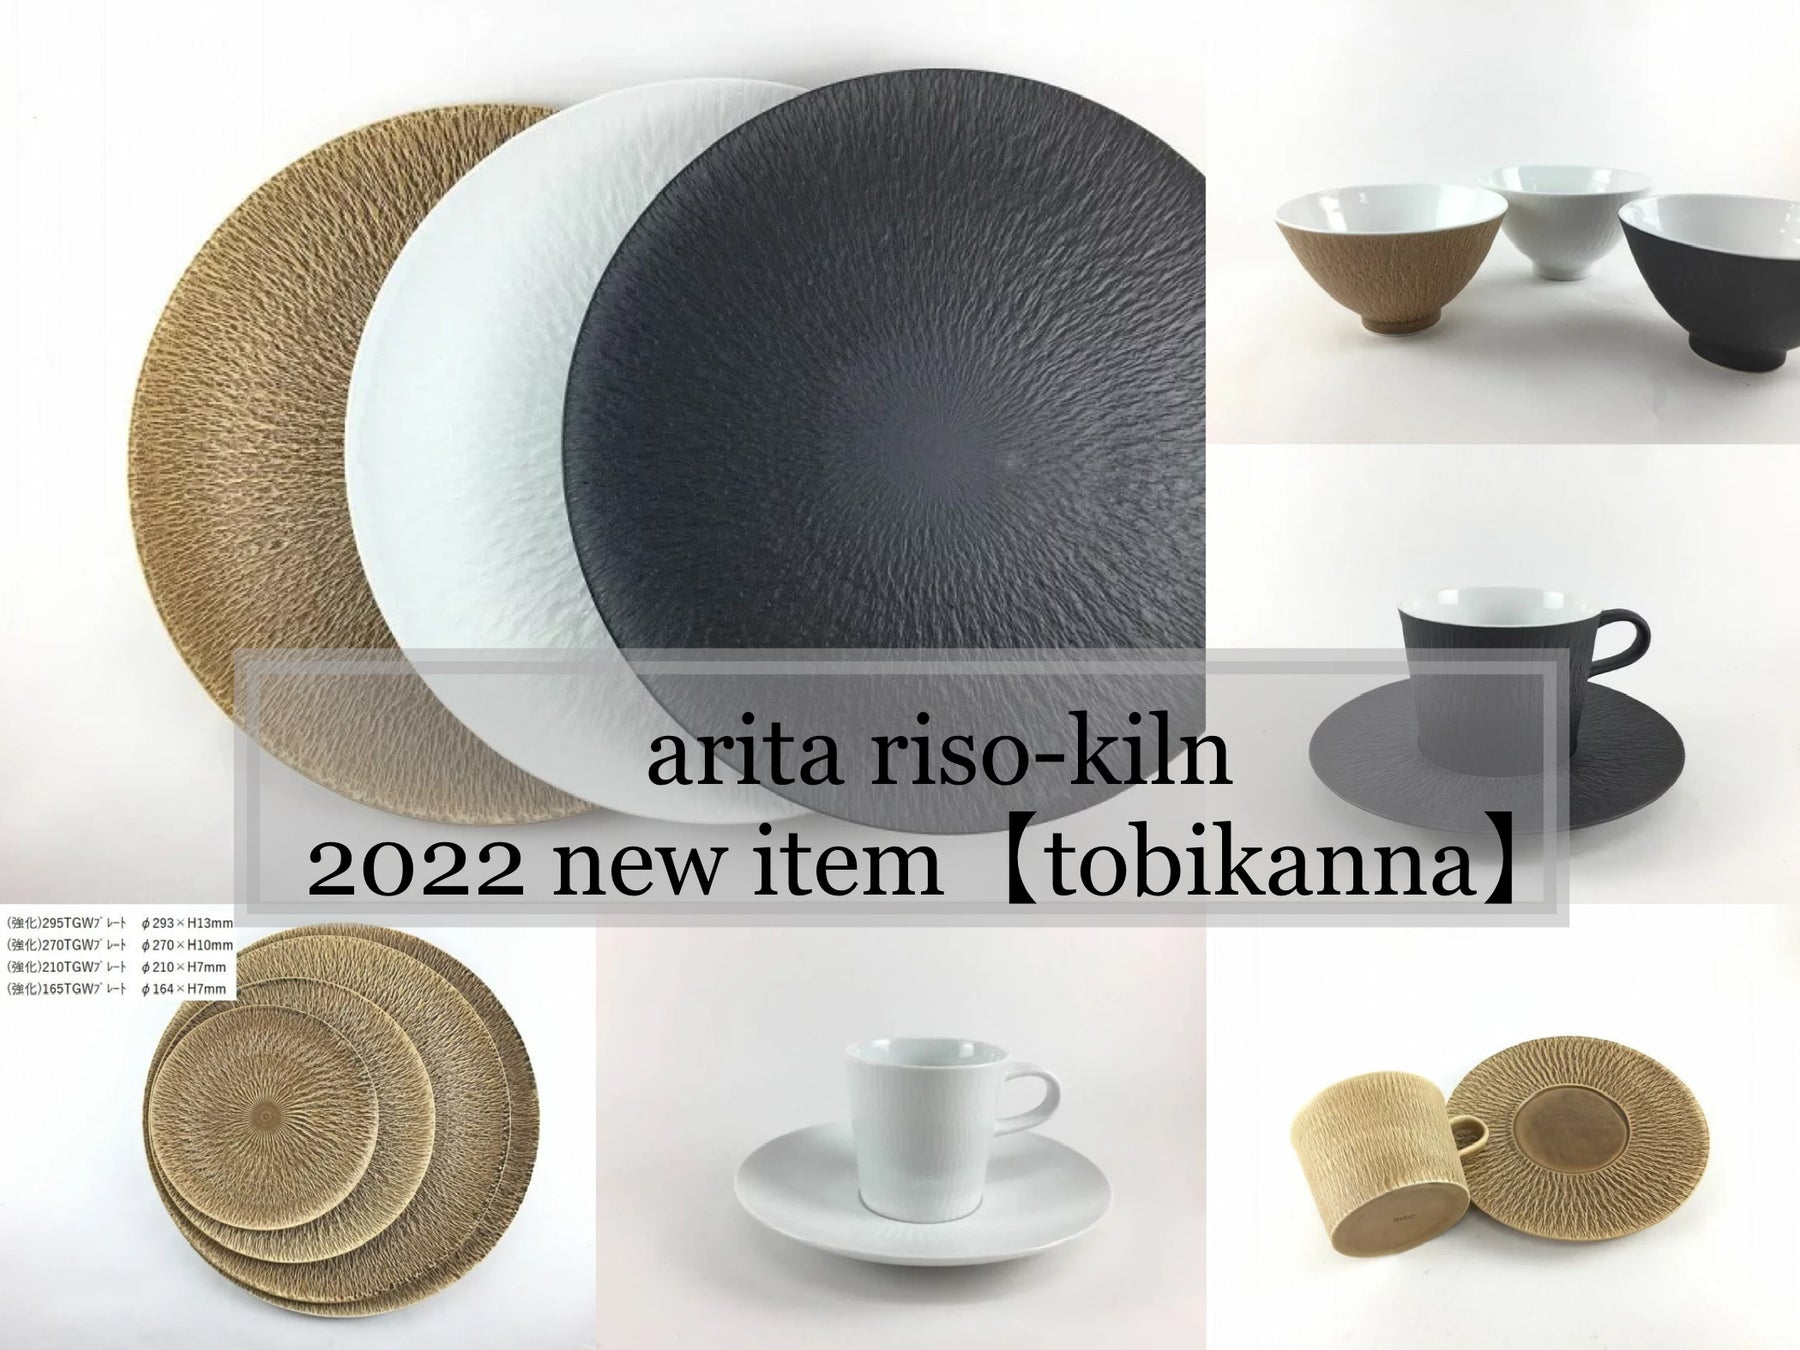 arita riso-kiln 2022new item